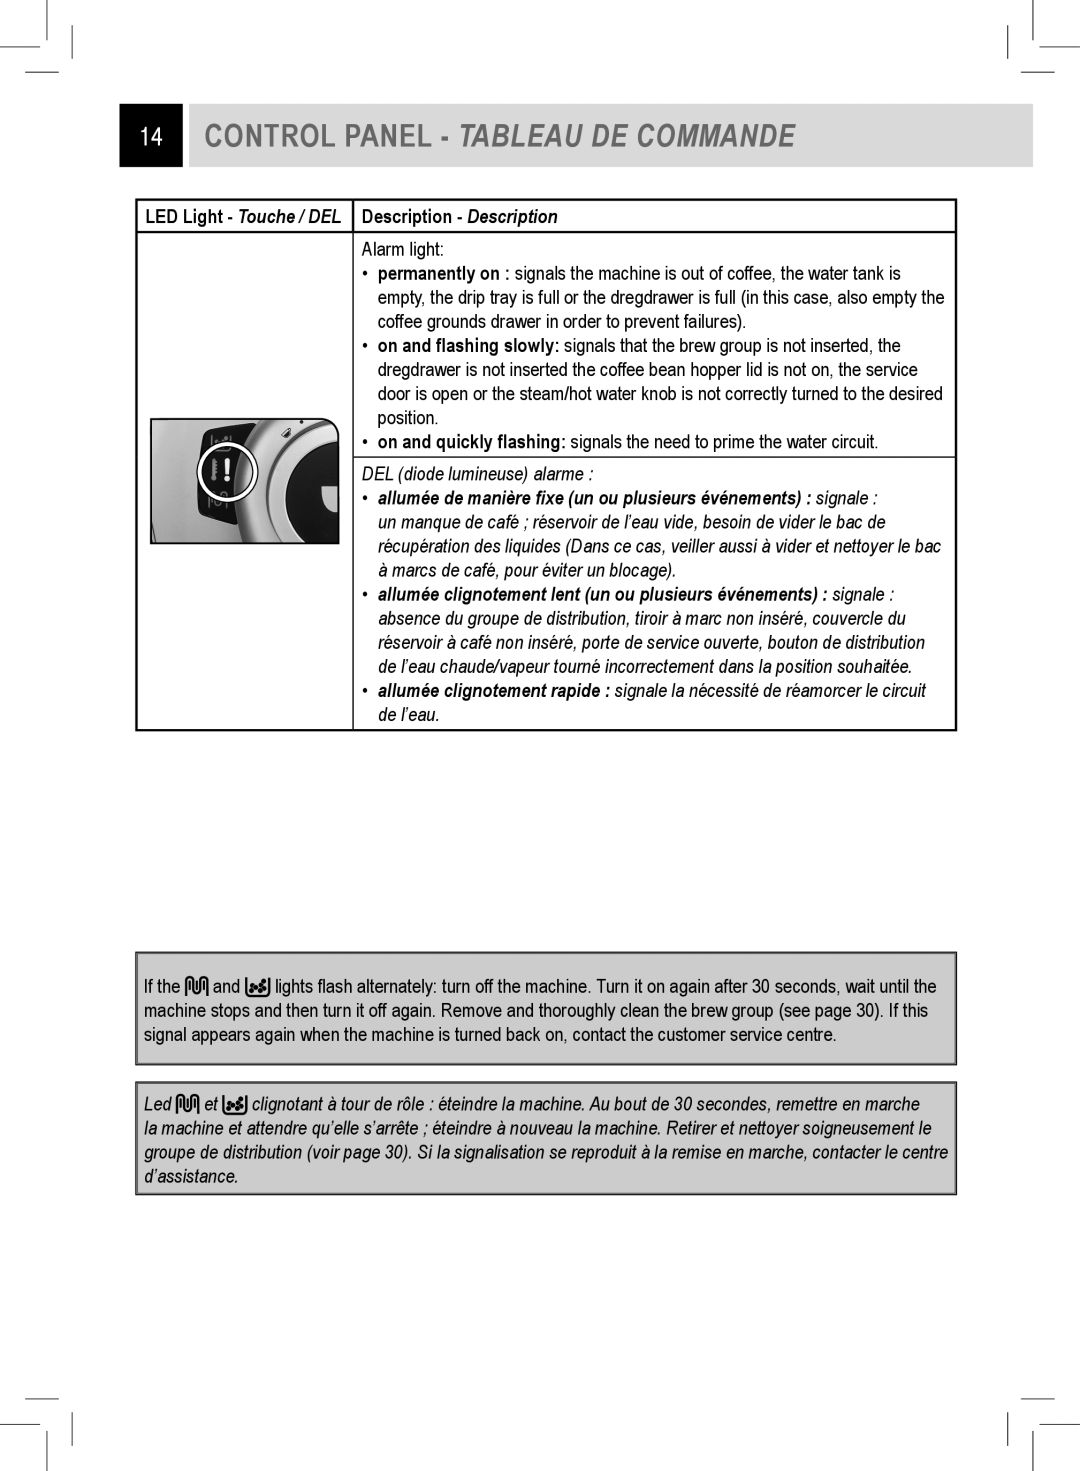 Saeco Coffee Makers RI9752/47 Control Panel - Tableau De Commande, LED Light - Touche / DEL Description - Description 